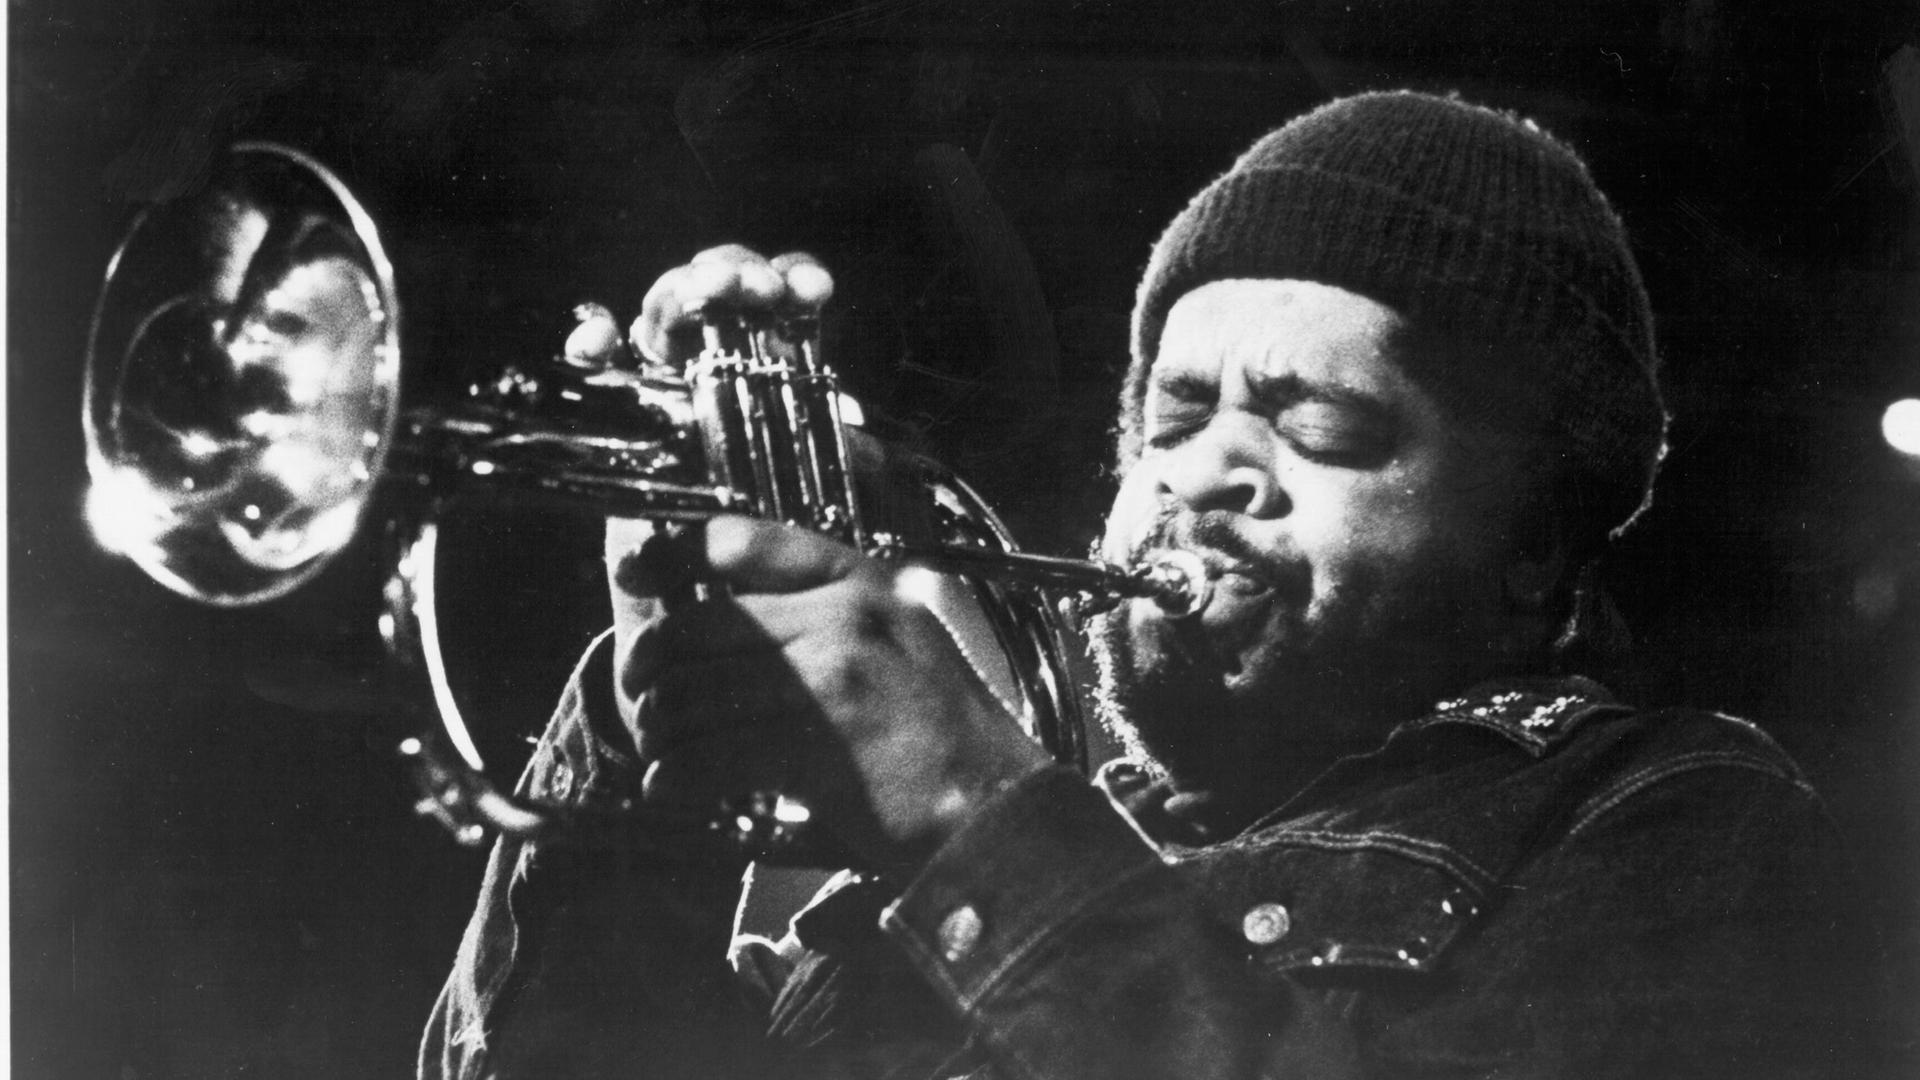 Der Jazzmusiker Donald Byrd posiert mit Trompete für ein Werbefoto für das Label Blue Note Records in den frühen 1970er-Jahren.